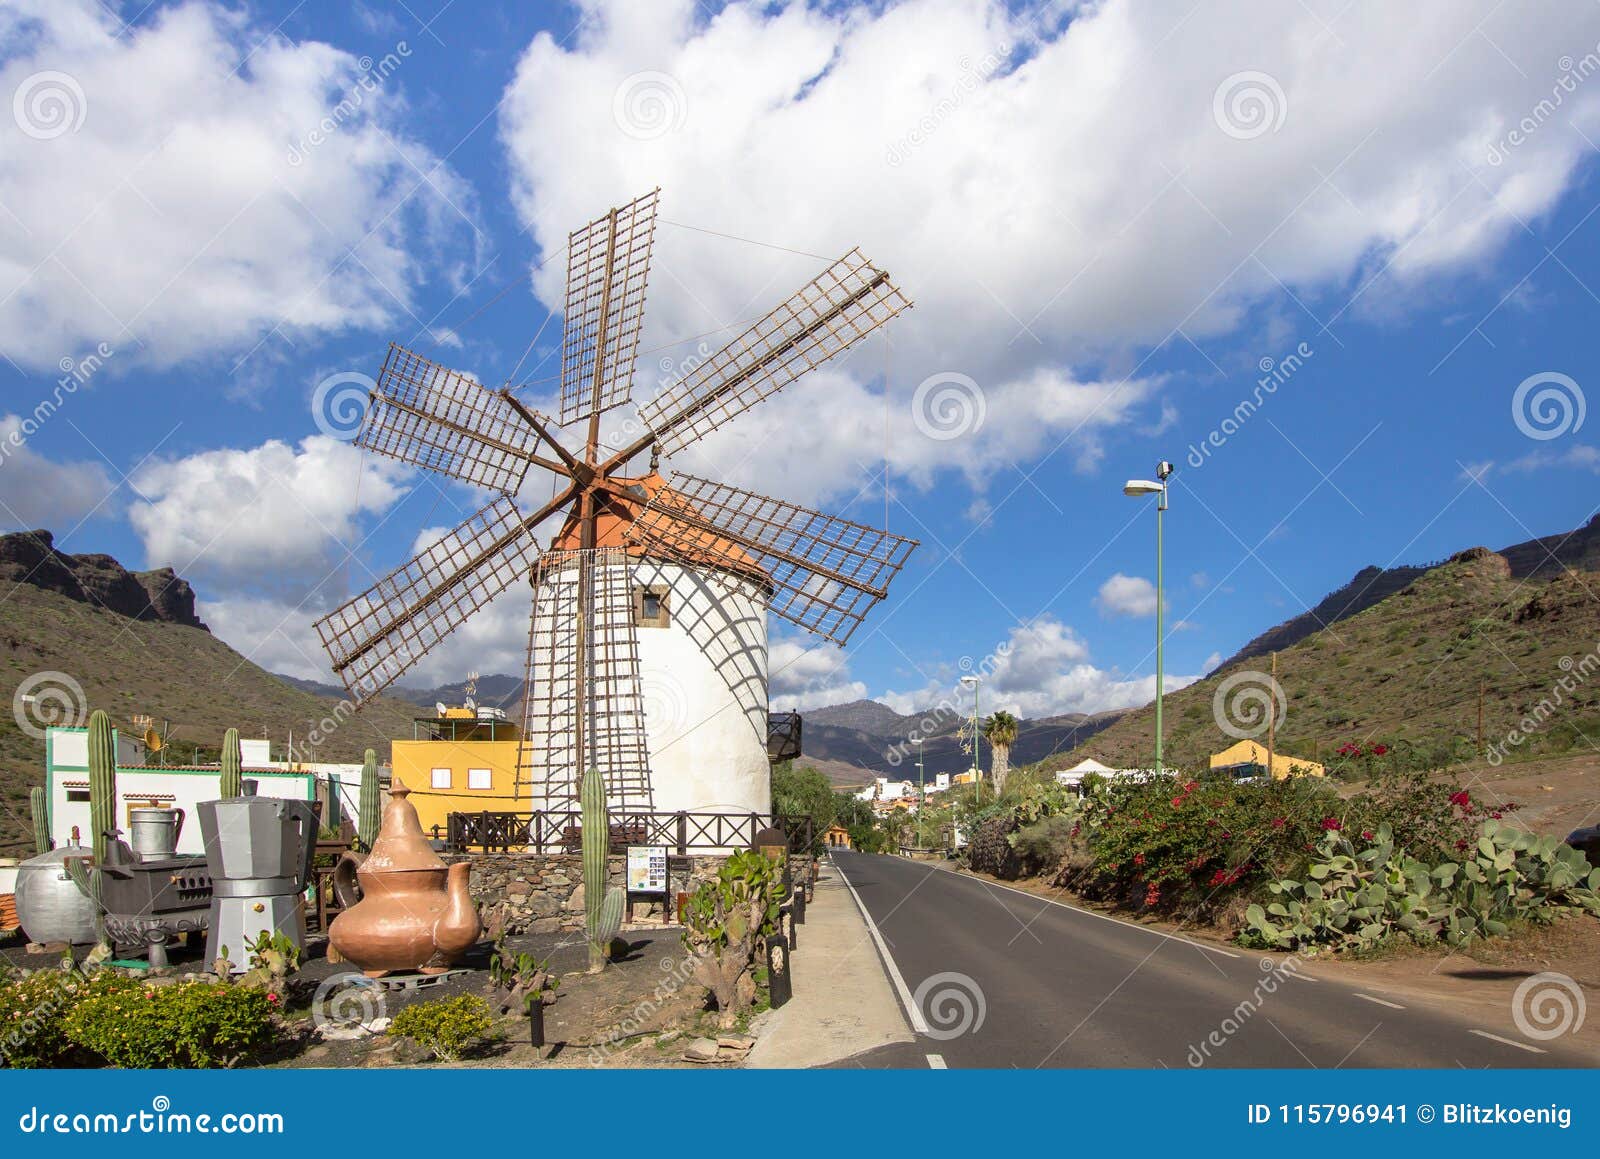 gran canaria windmill